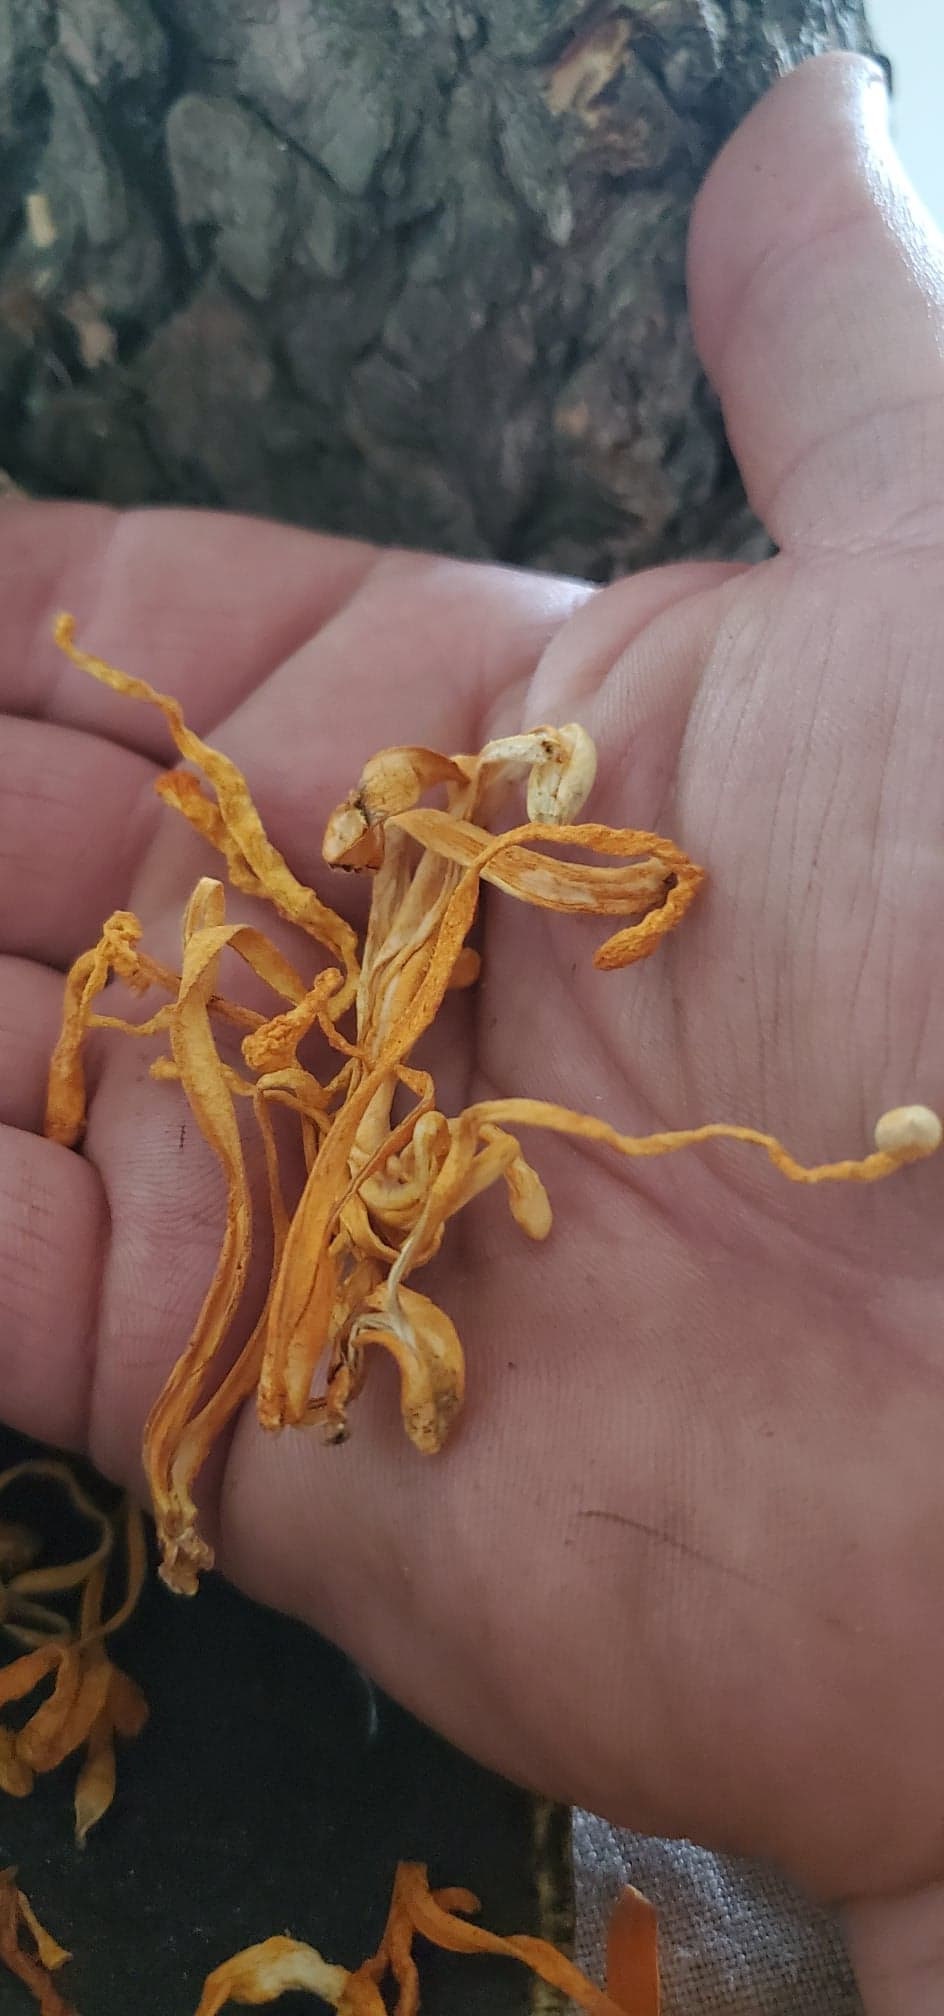 Cordyceps Mushroom (Cordyceps militaris) - Dried Whole